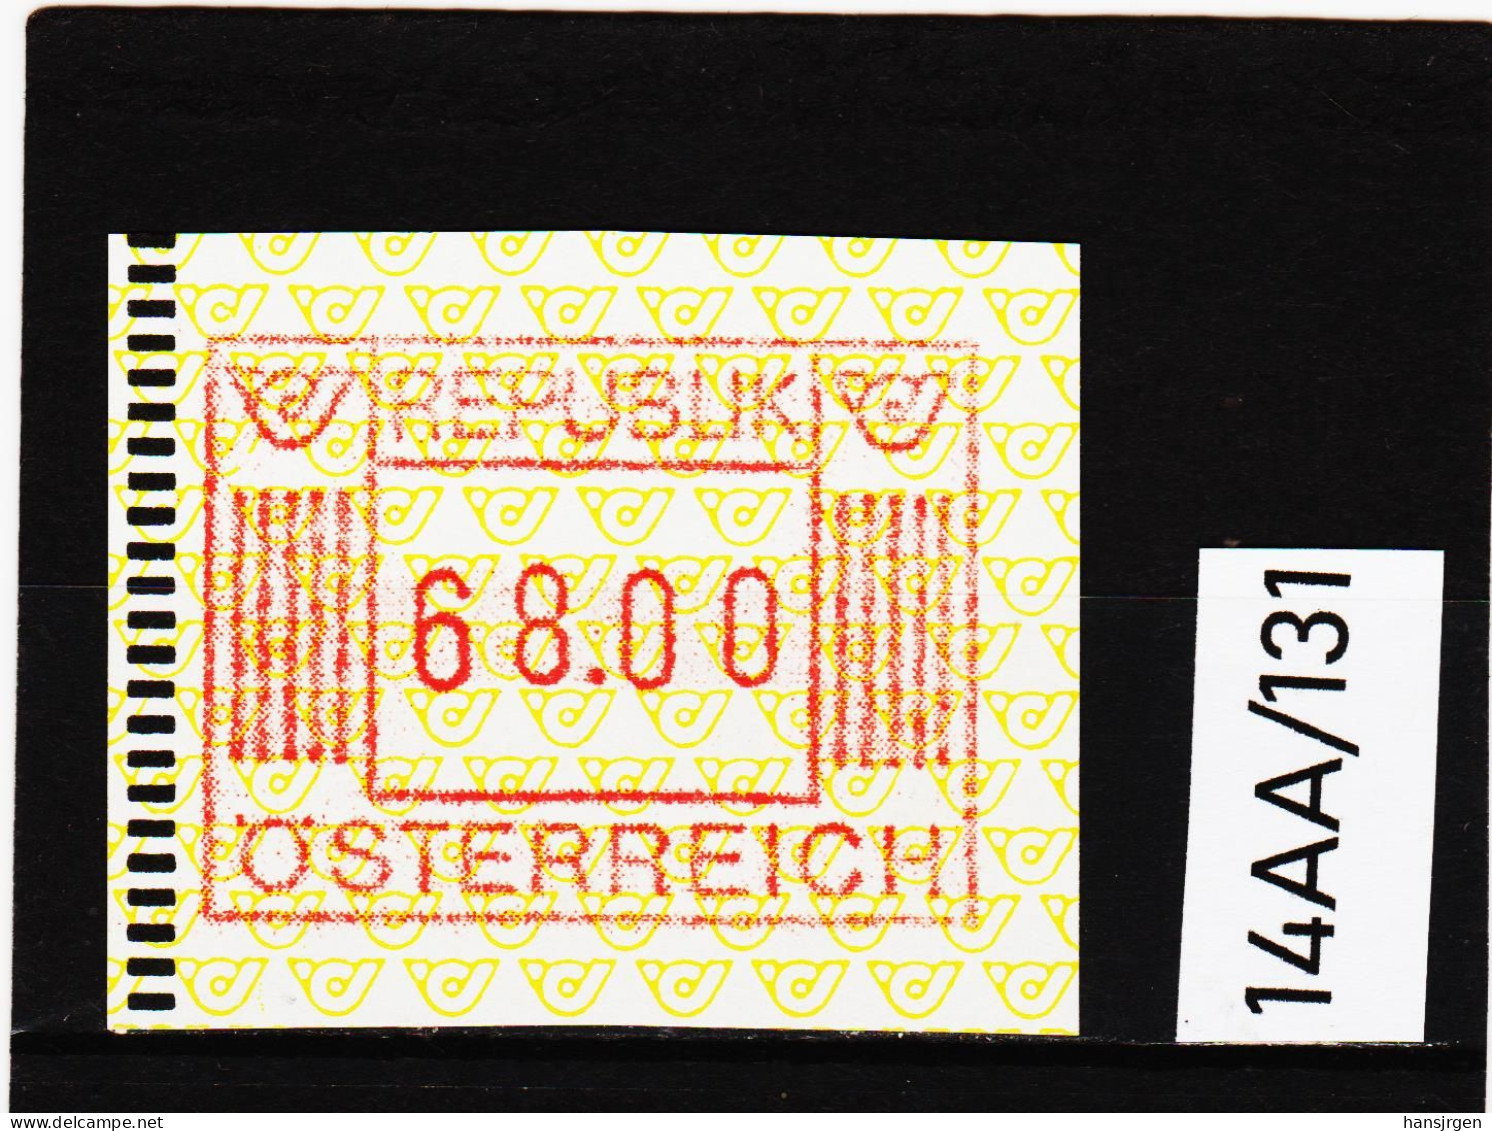 14AA/131  ÖSTERREICH 1983 AUTOMATENMARKEN  A N K  1. AUSGABE  68,00 SCHILLING   ** Postfrisch - Automatenmarken [ATM]